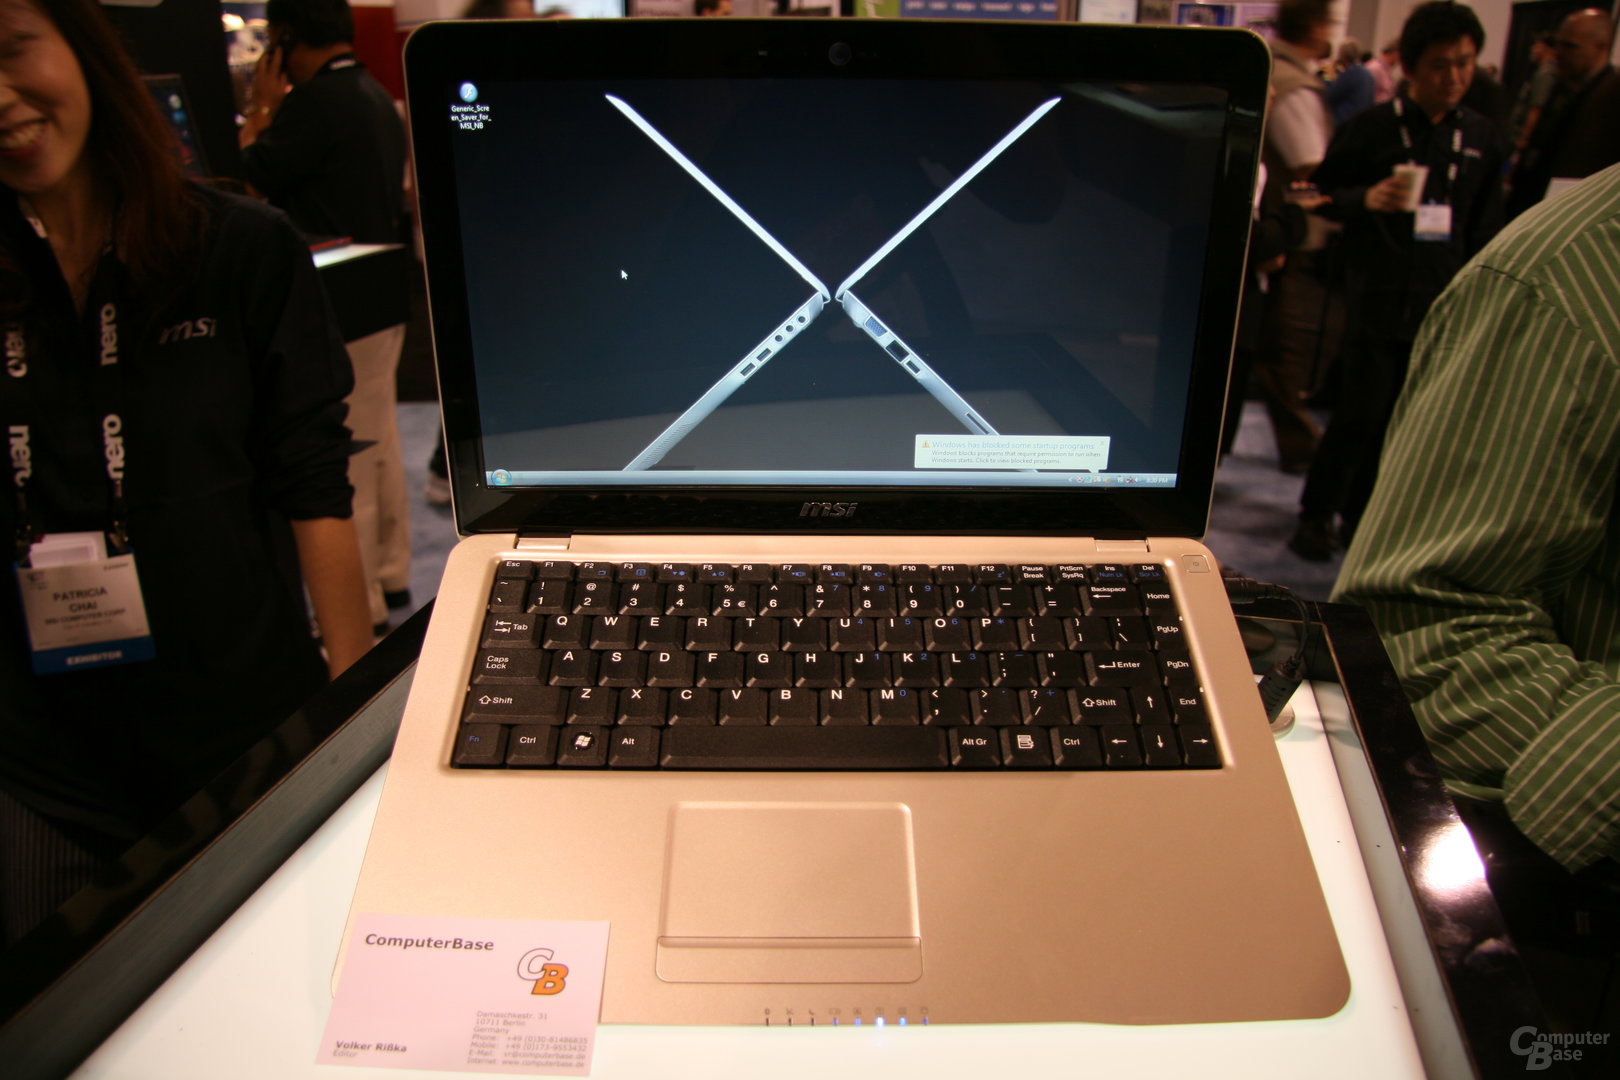 MSI X320